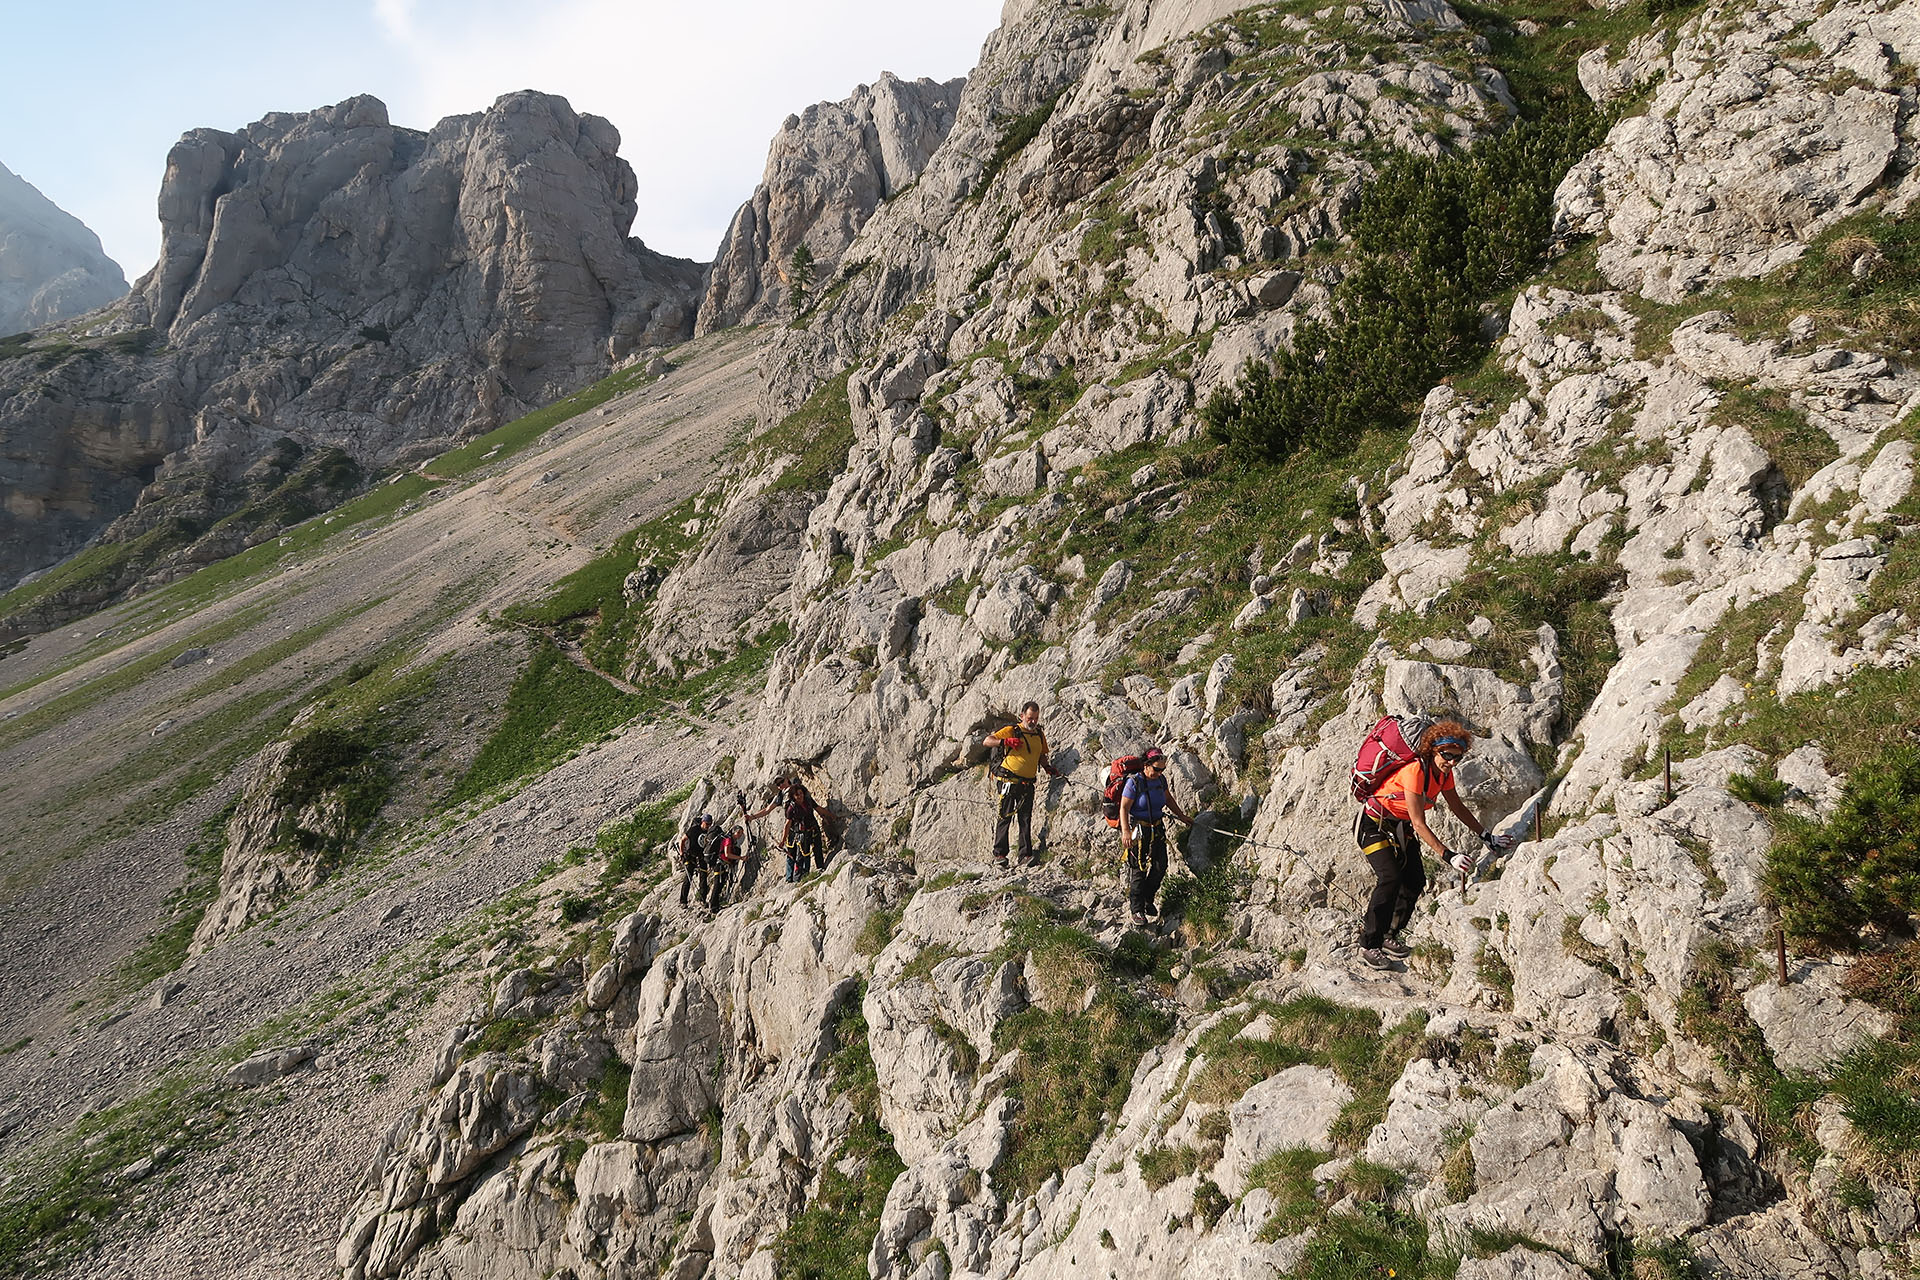 Trekking across Julian Alps with ascent to Triglav